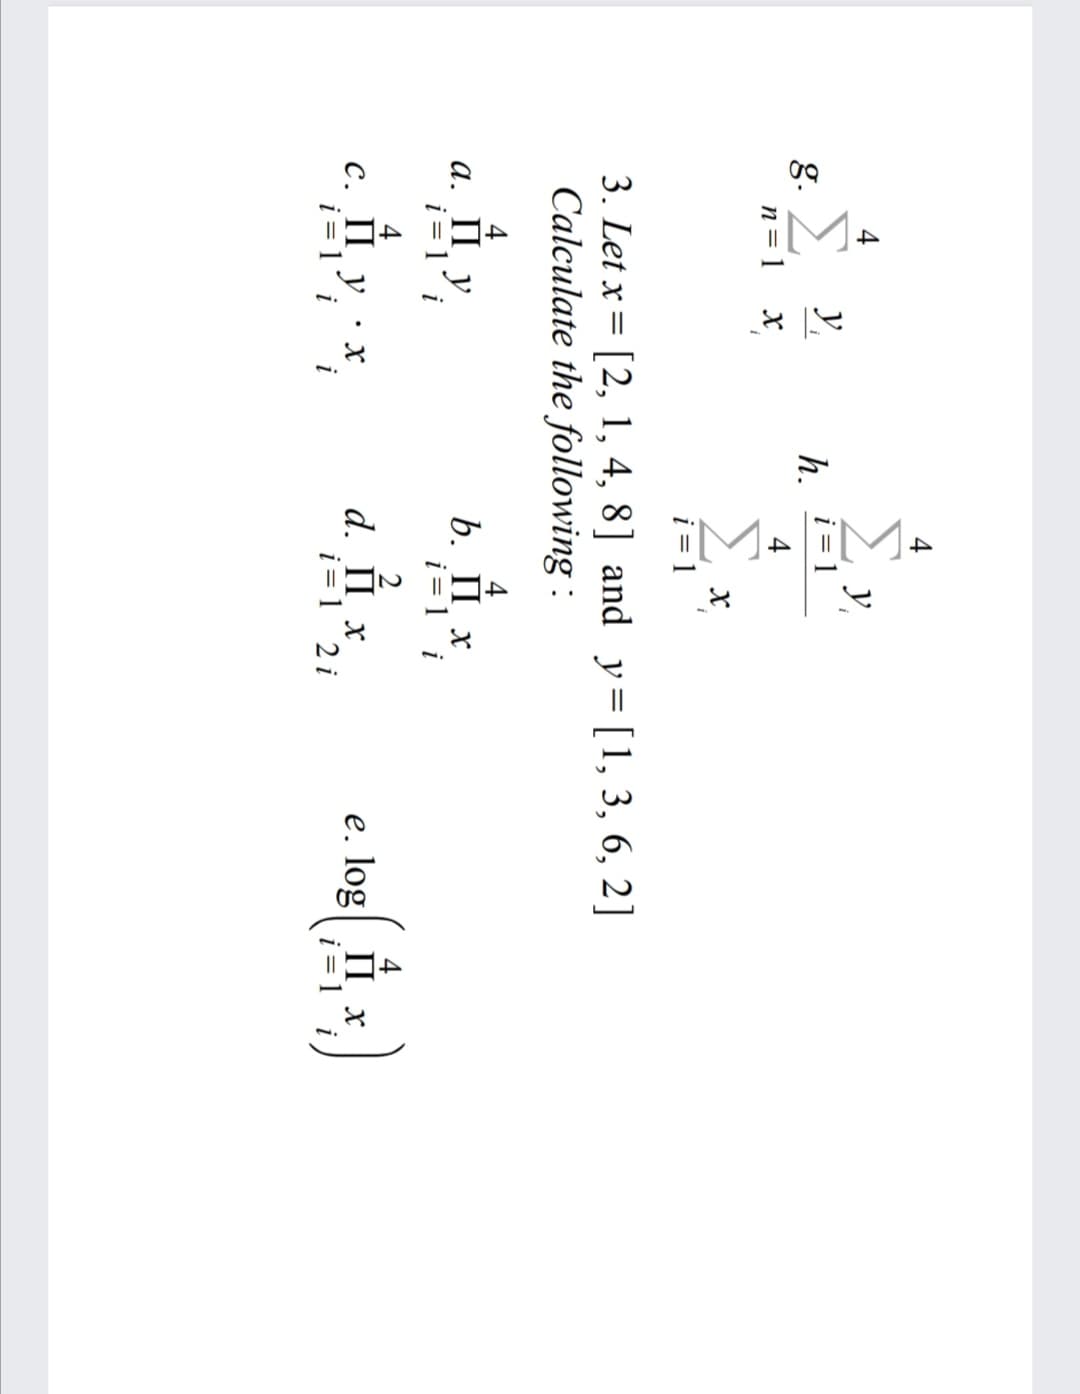 4
y,
i = 1
y,
g.
n= 1 x
h.
4
i = 1
3. Let x = [2, 1, 4, 8] and y=[1, 3, 6, 2]
Calculate the following :
4
b. П х
i = 1 i
4
а. Пу
i = 1´ i
2
d. П х
i = 1 2 i
e. log II x
С. Пу:х
i = 1´ i
